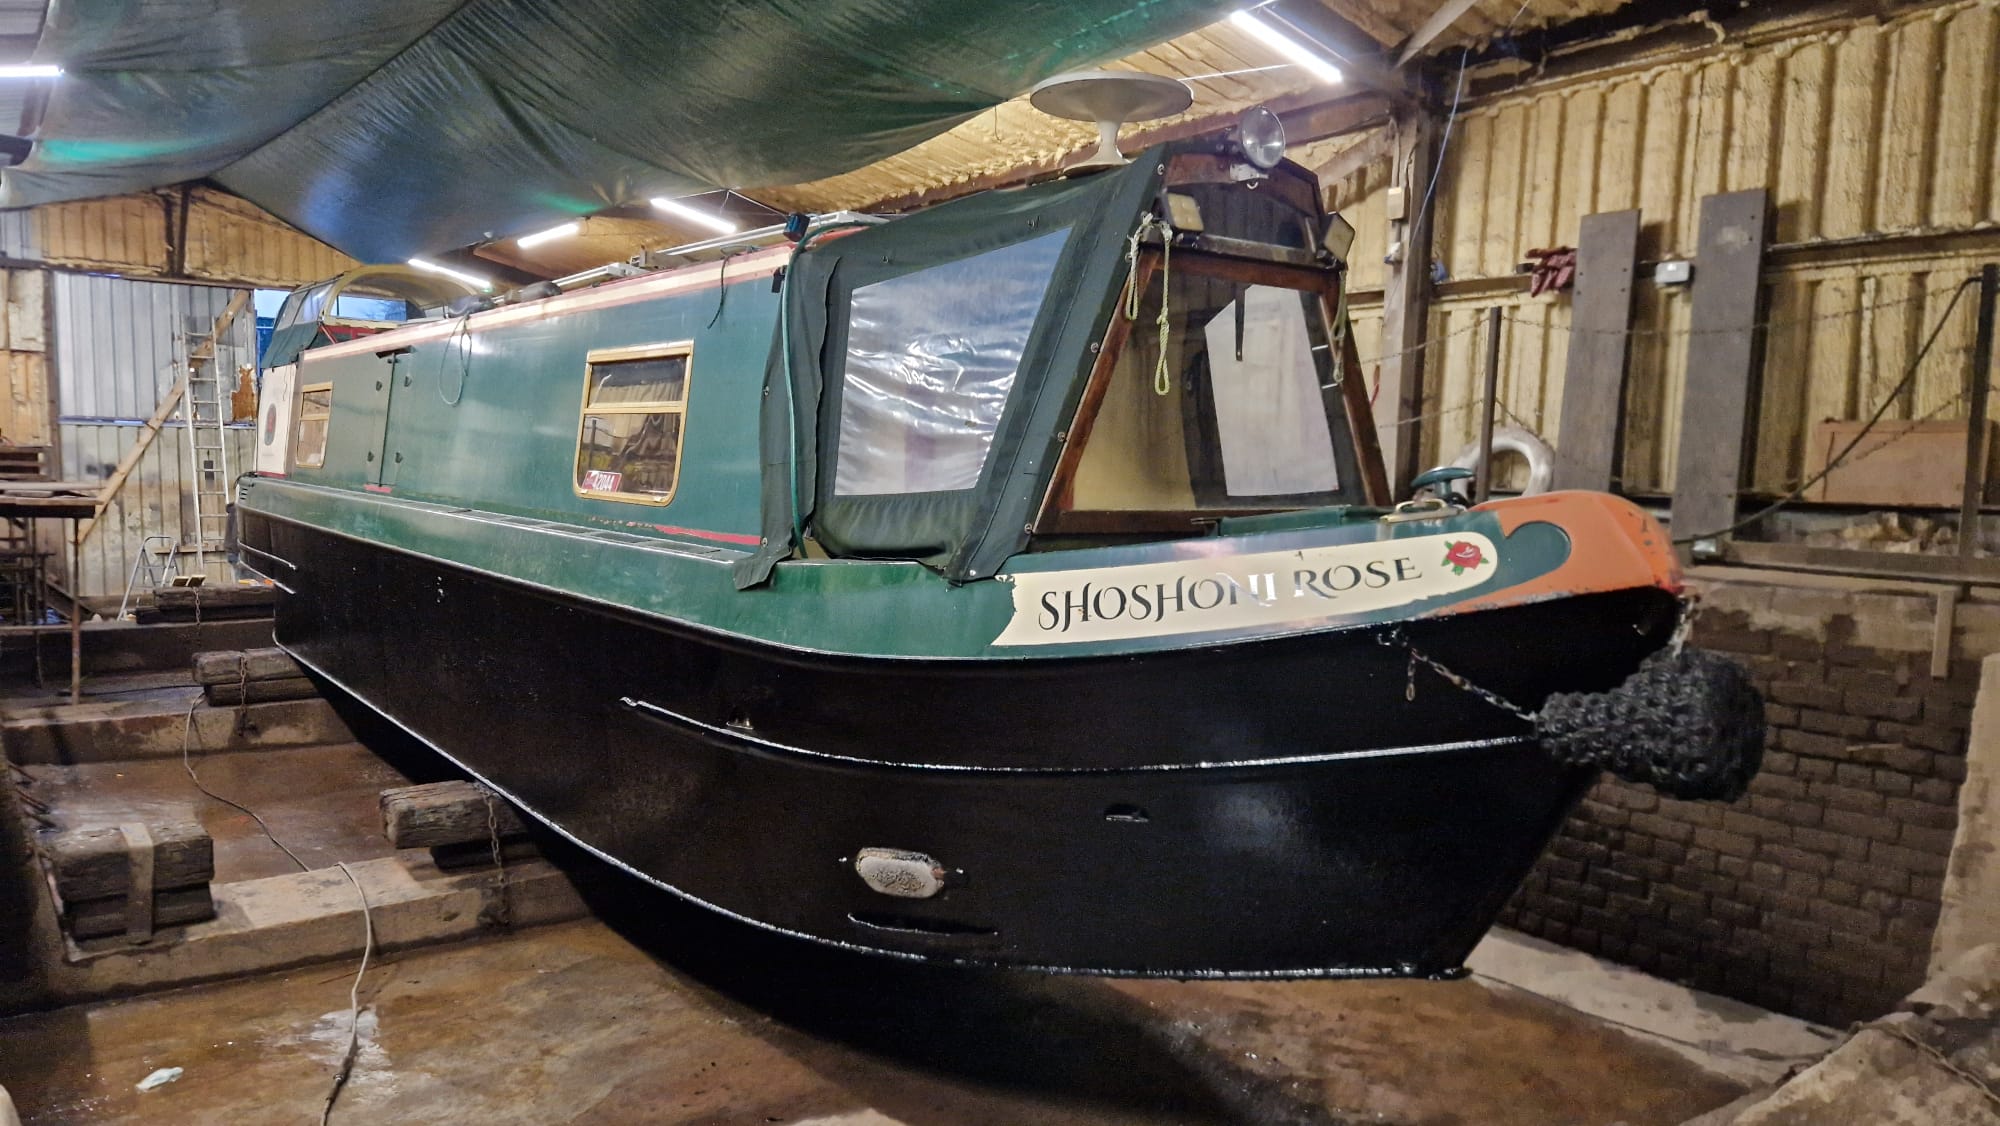 NB Shoshoni Rose - 41ft reverse layout semi trad stern narrowboat for sale. 5